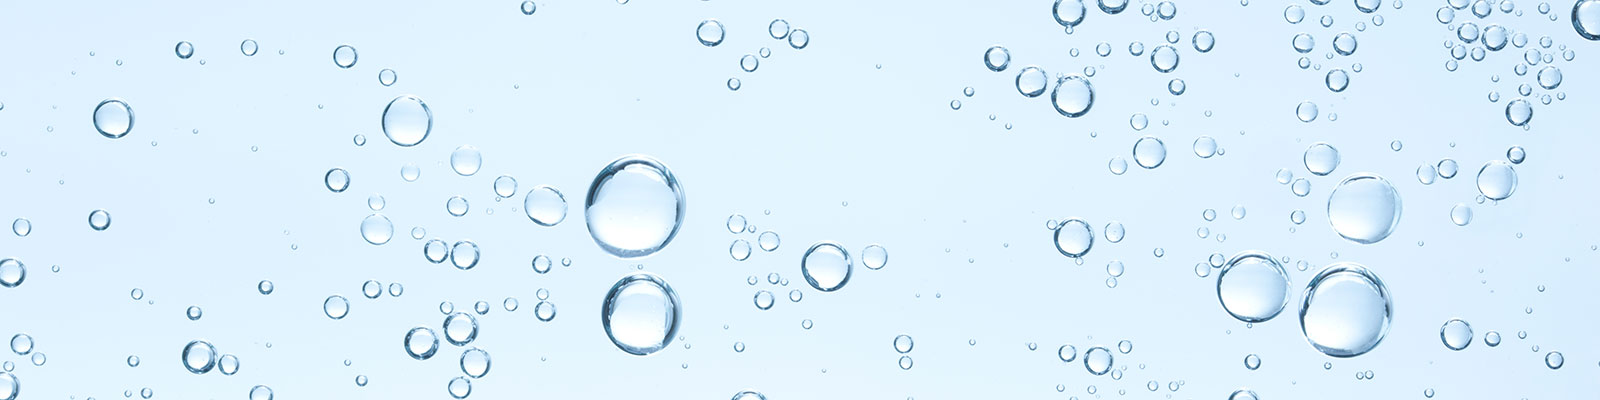 Blasen im klaren Wasser